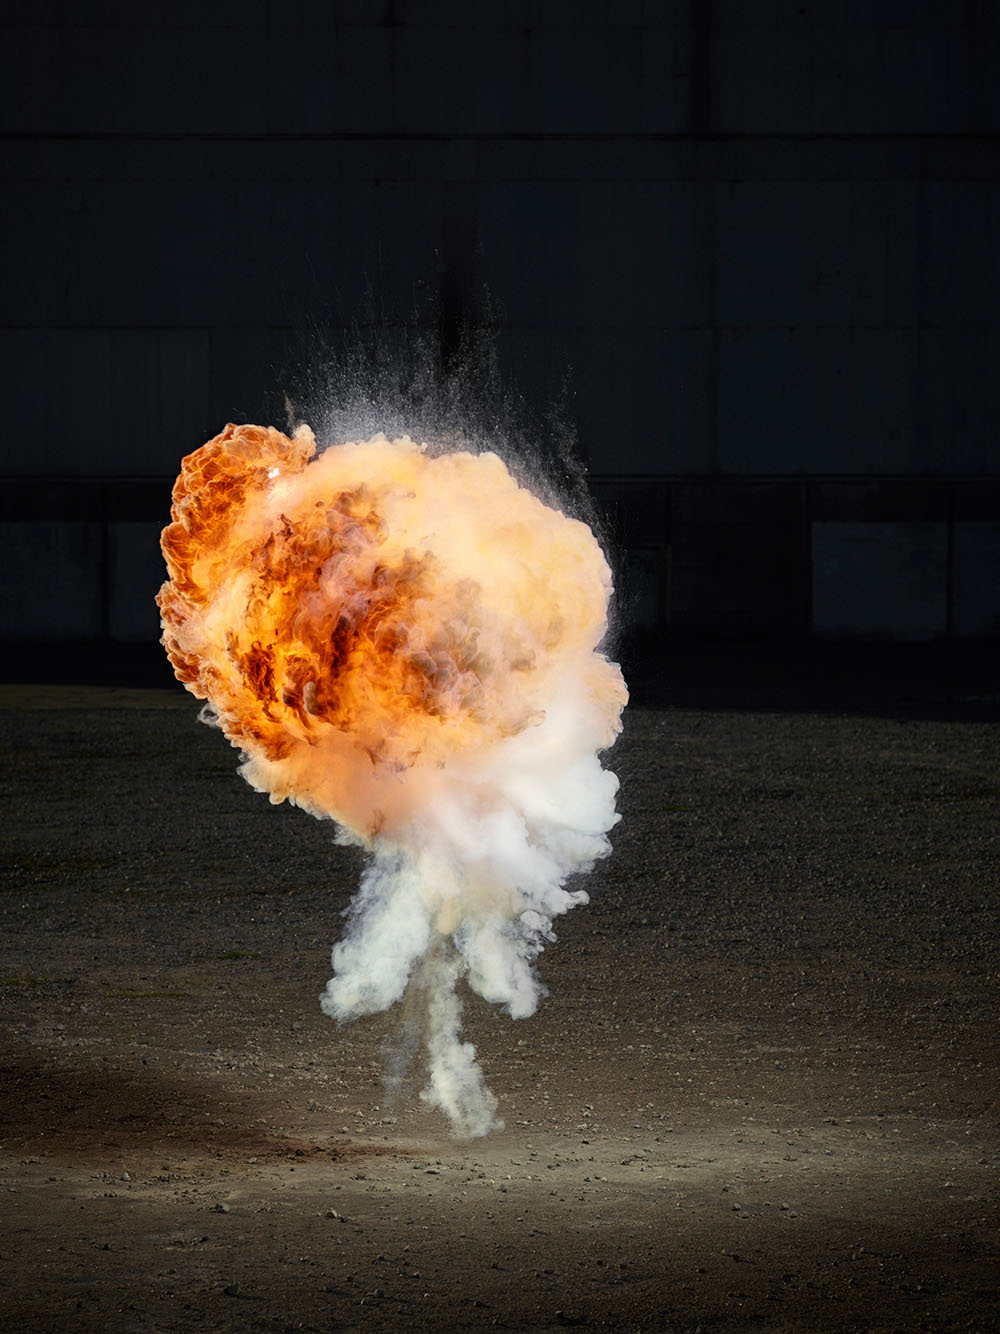 Explosion2.0: облачные взрывы в фотографиях от Кена Херманна